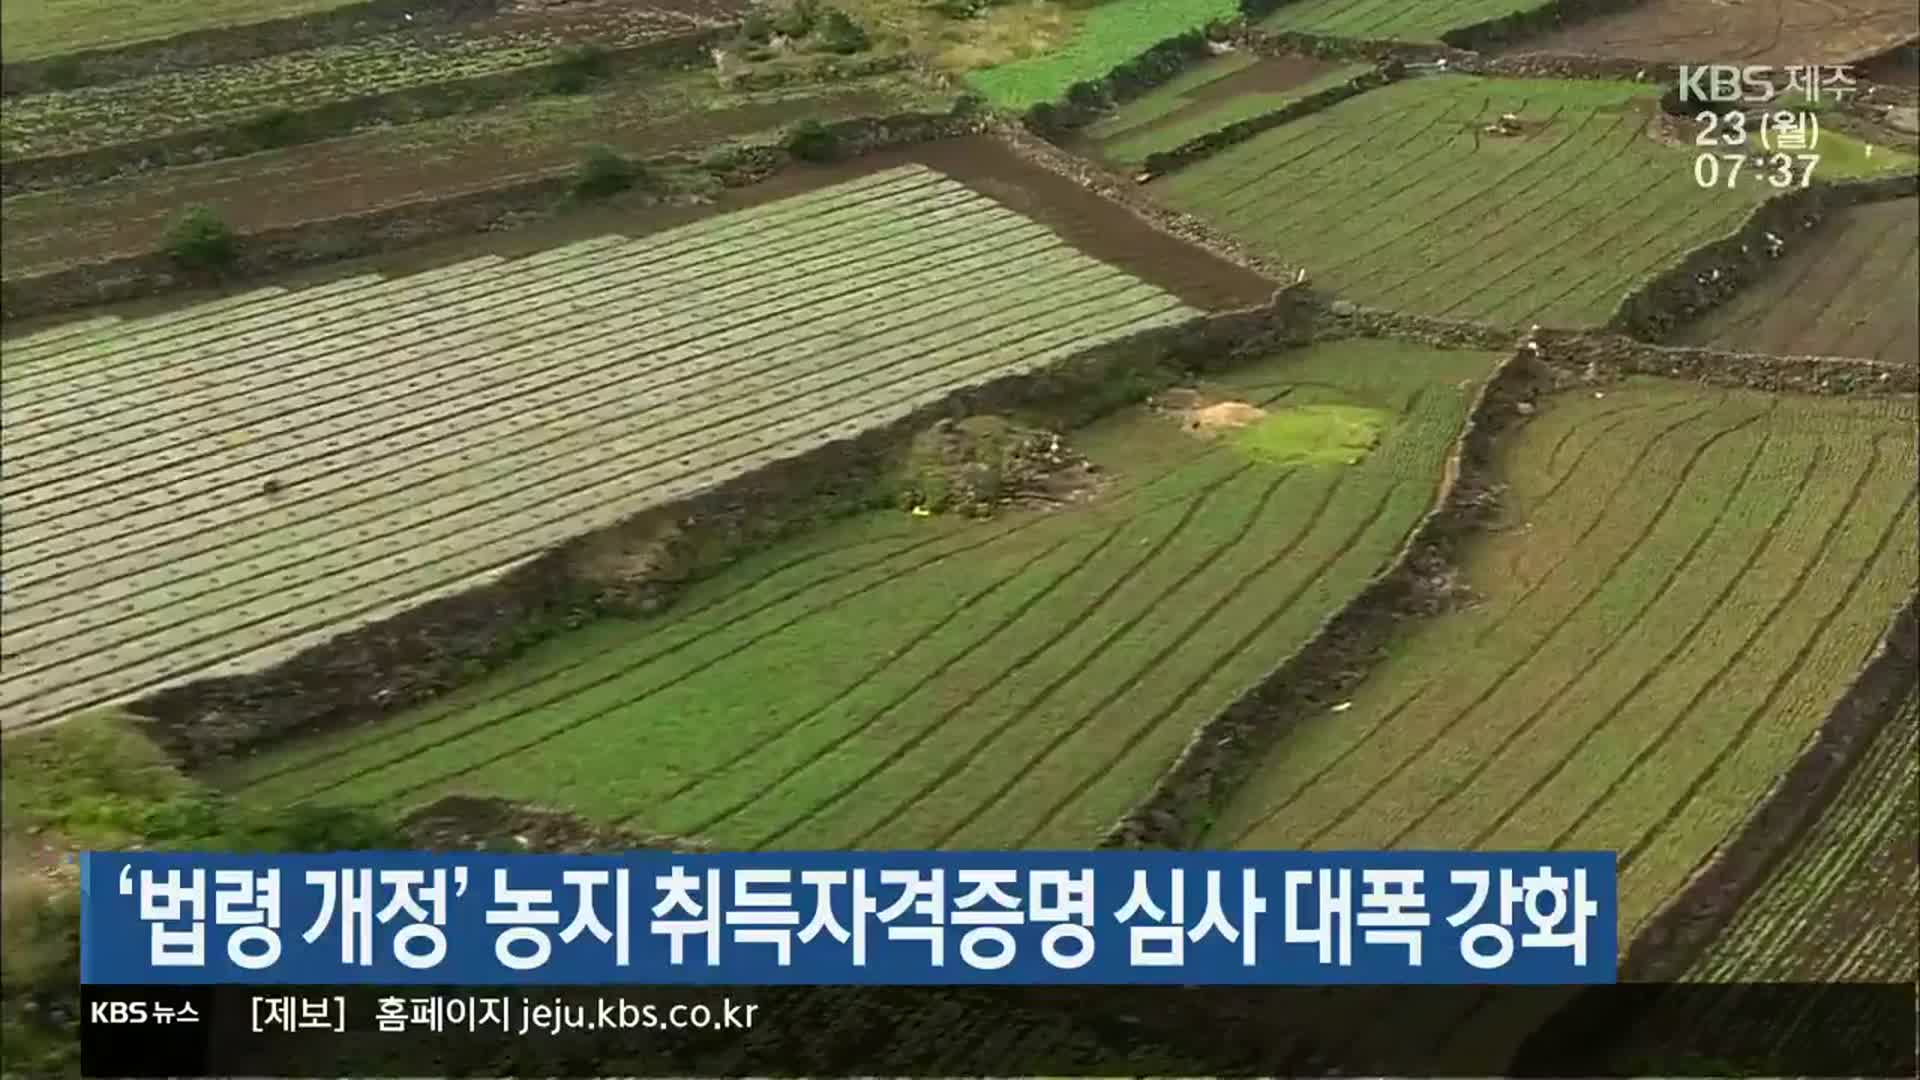 ‘법령 개정’ 농지 취득자격증명 심사 대폭 강화